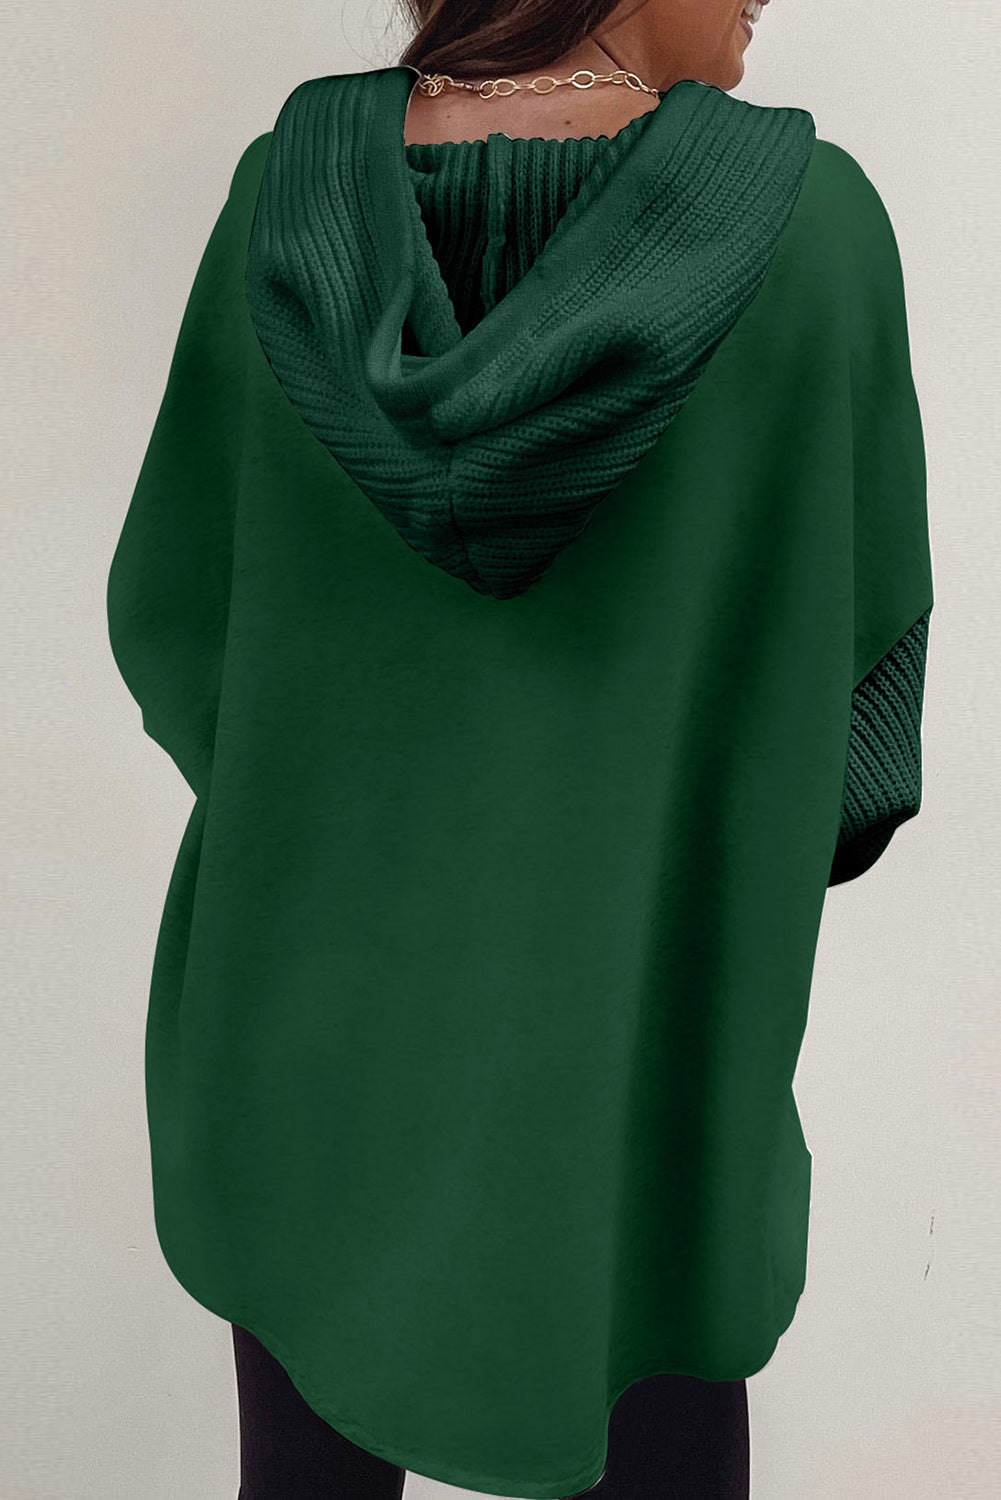 Giacca con cappuccio e maniche lavorate a maglia a contrasto verde nerastro con bottoni